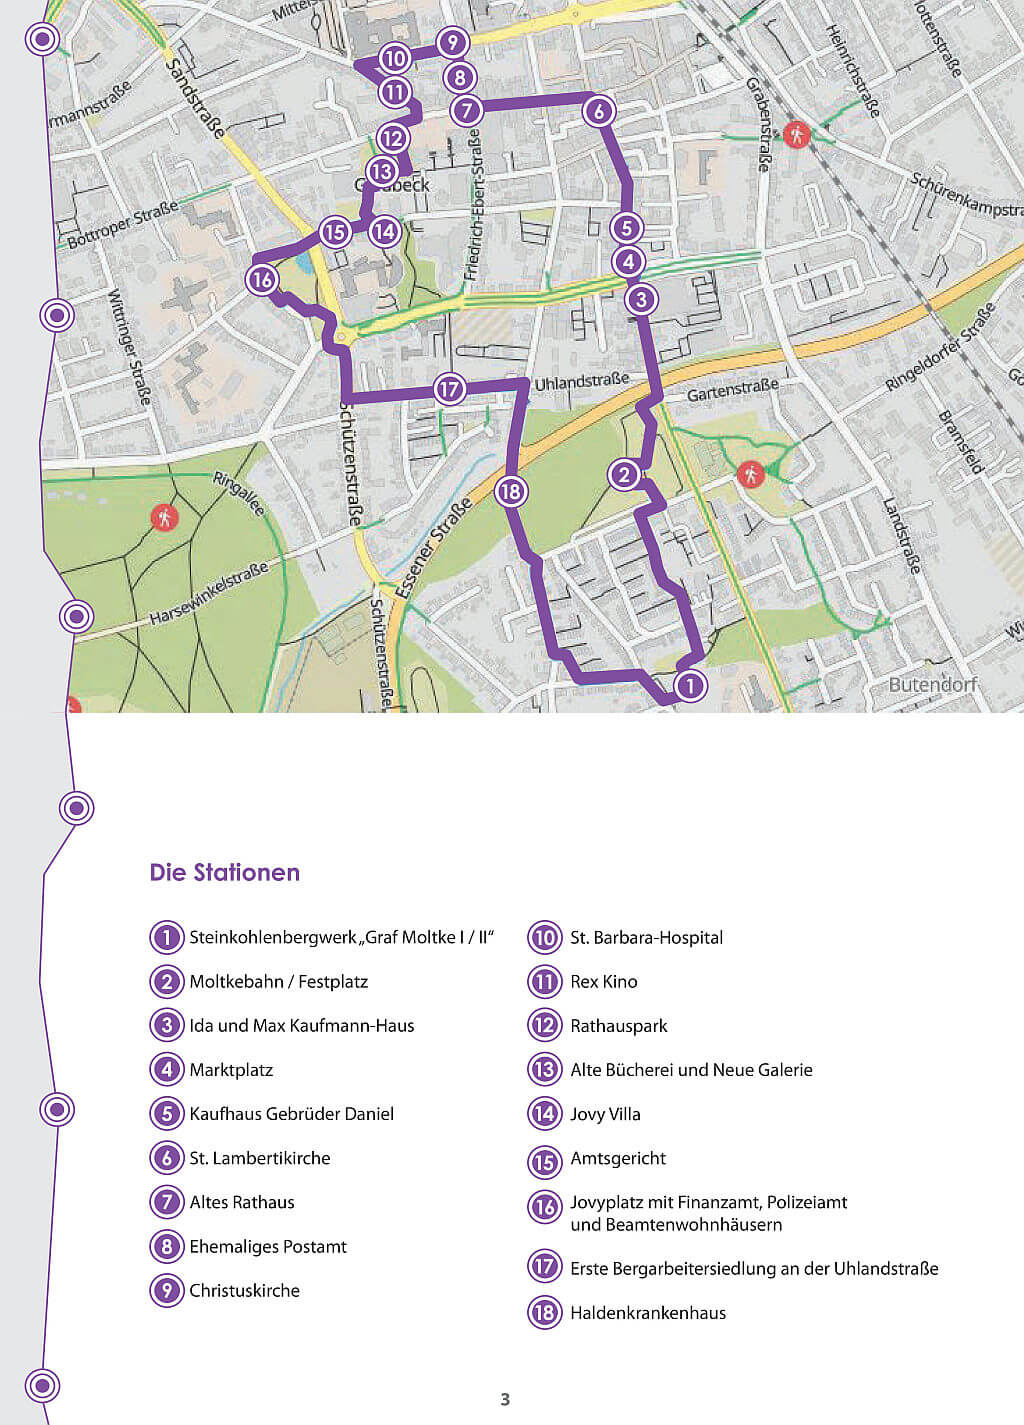 Gladbecker Kultur-Spaziergang - Karte mit den 18 Stationen